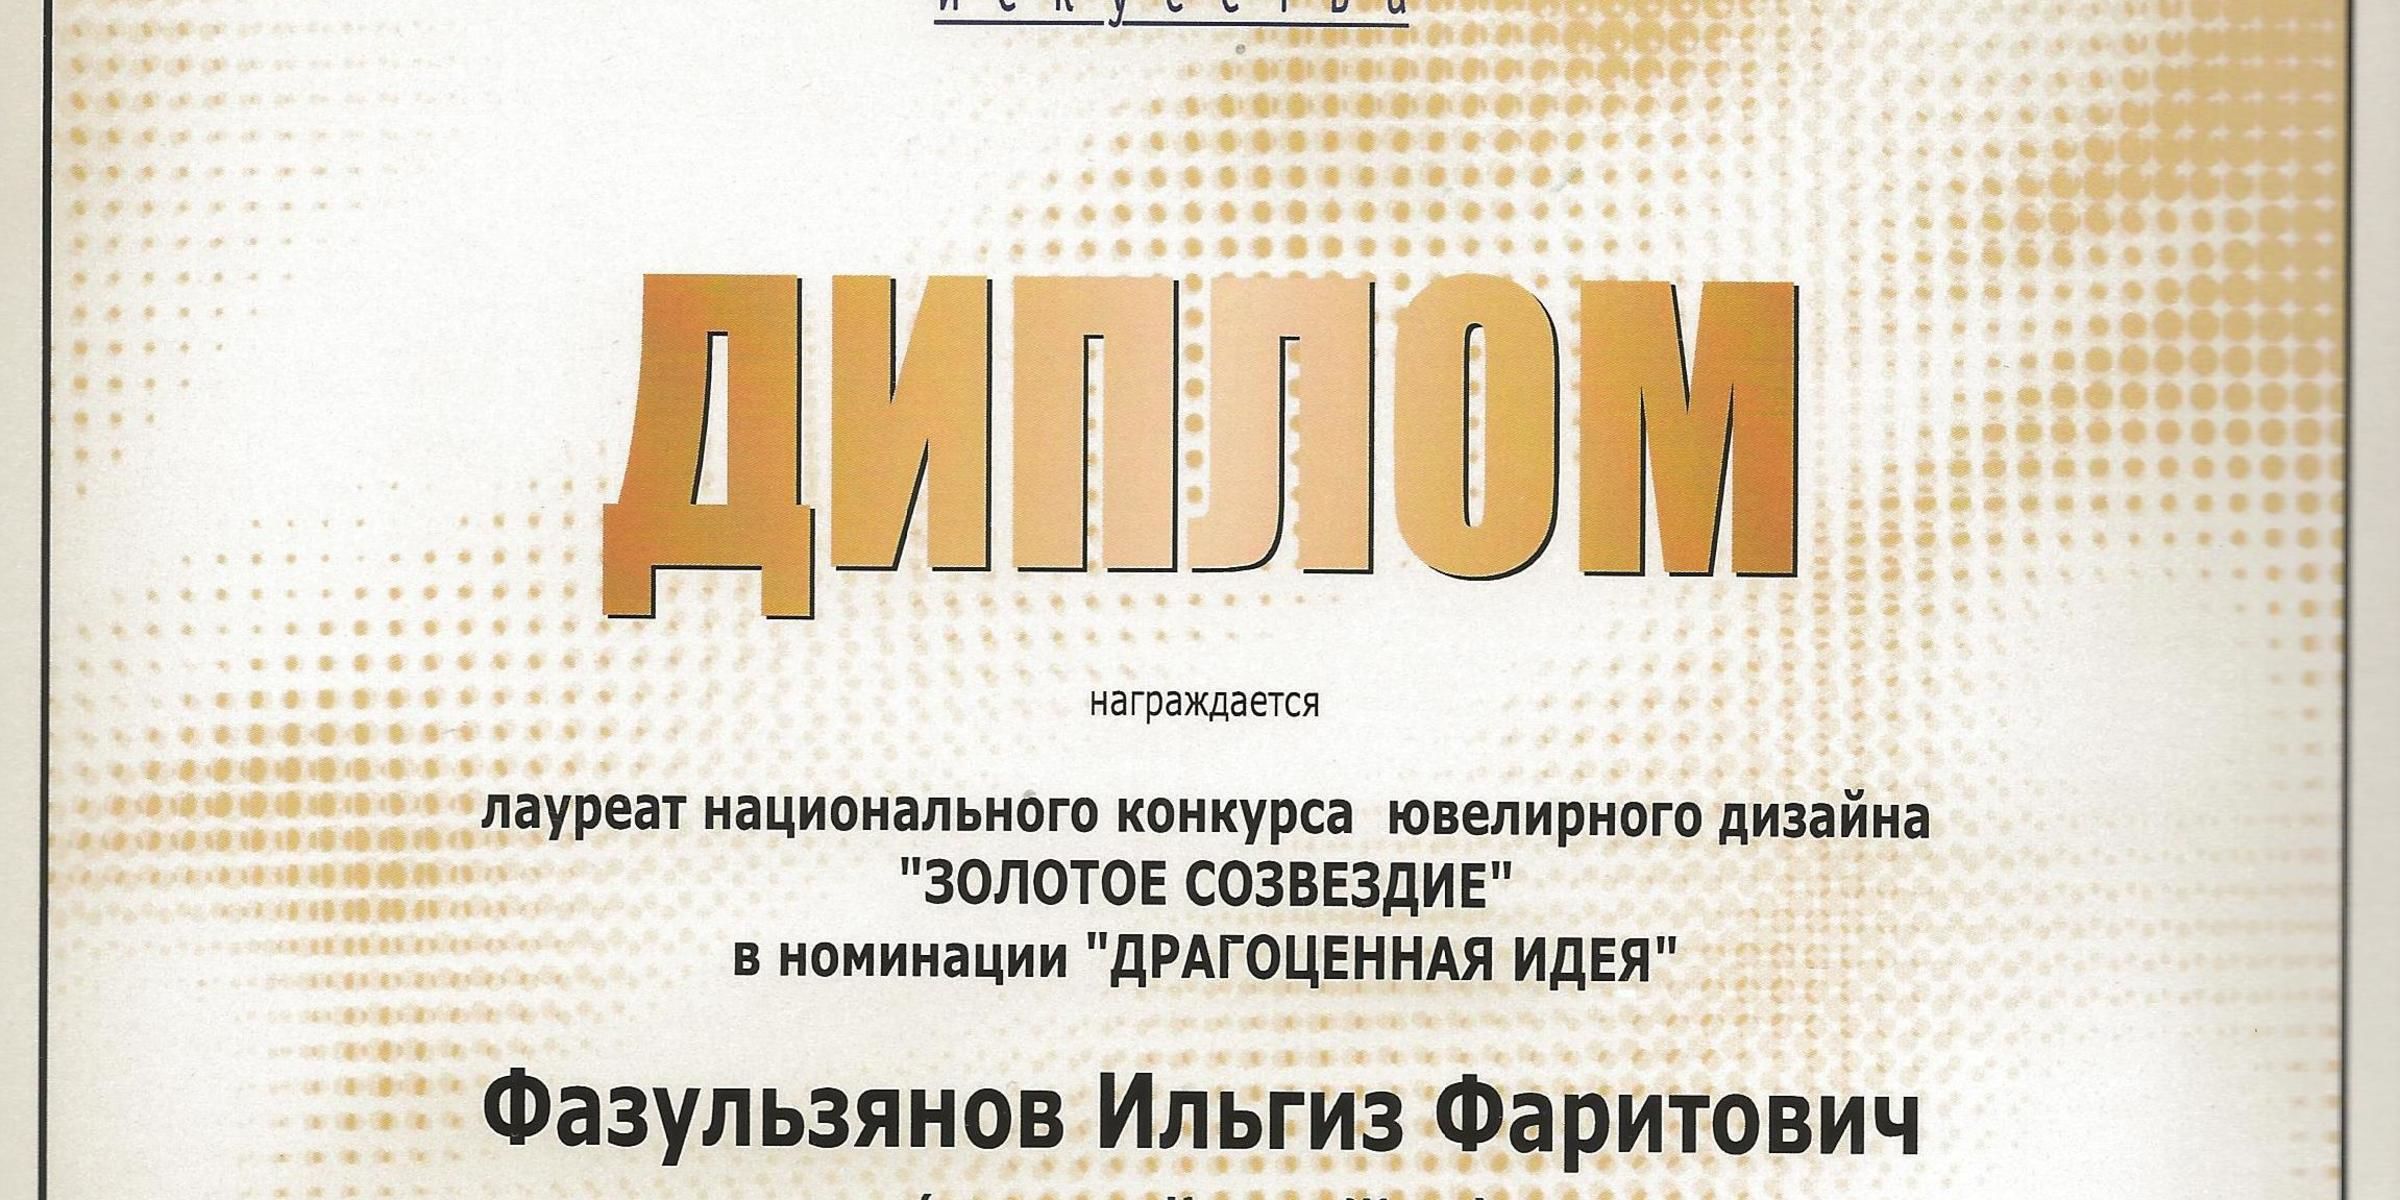 Лауреат национального конкурса ювелирного дизайна "Золотое созвездие" 2002 (Москва)